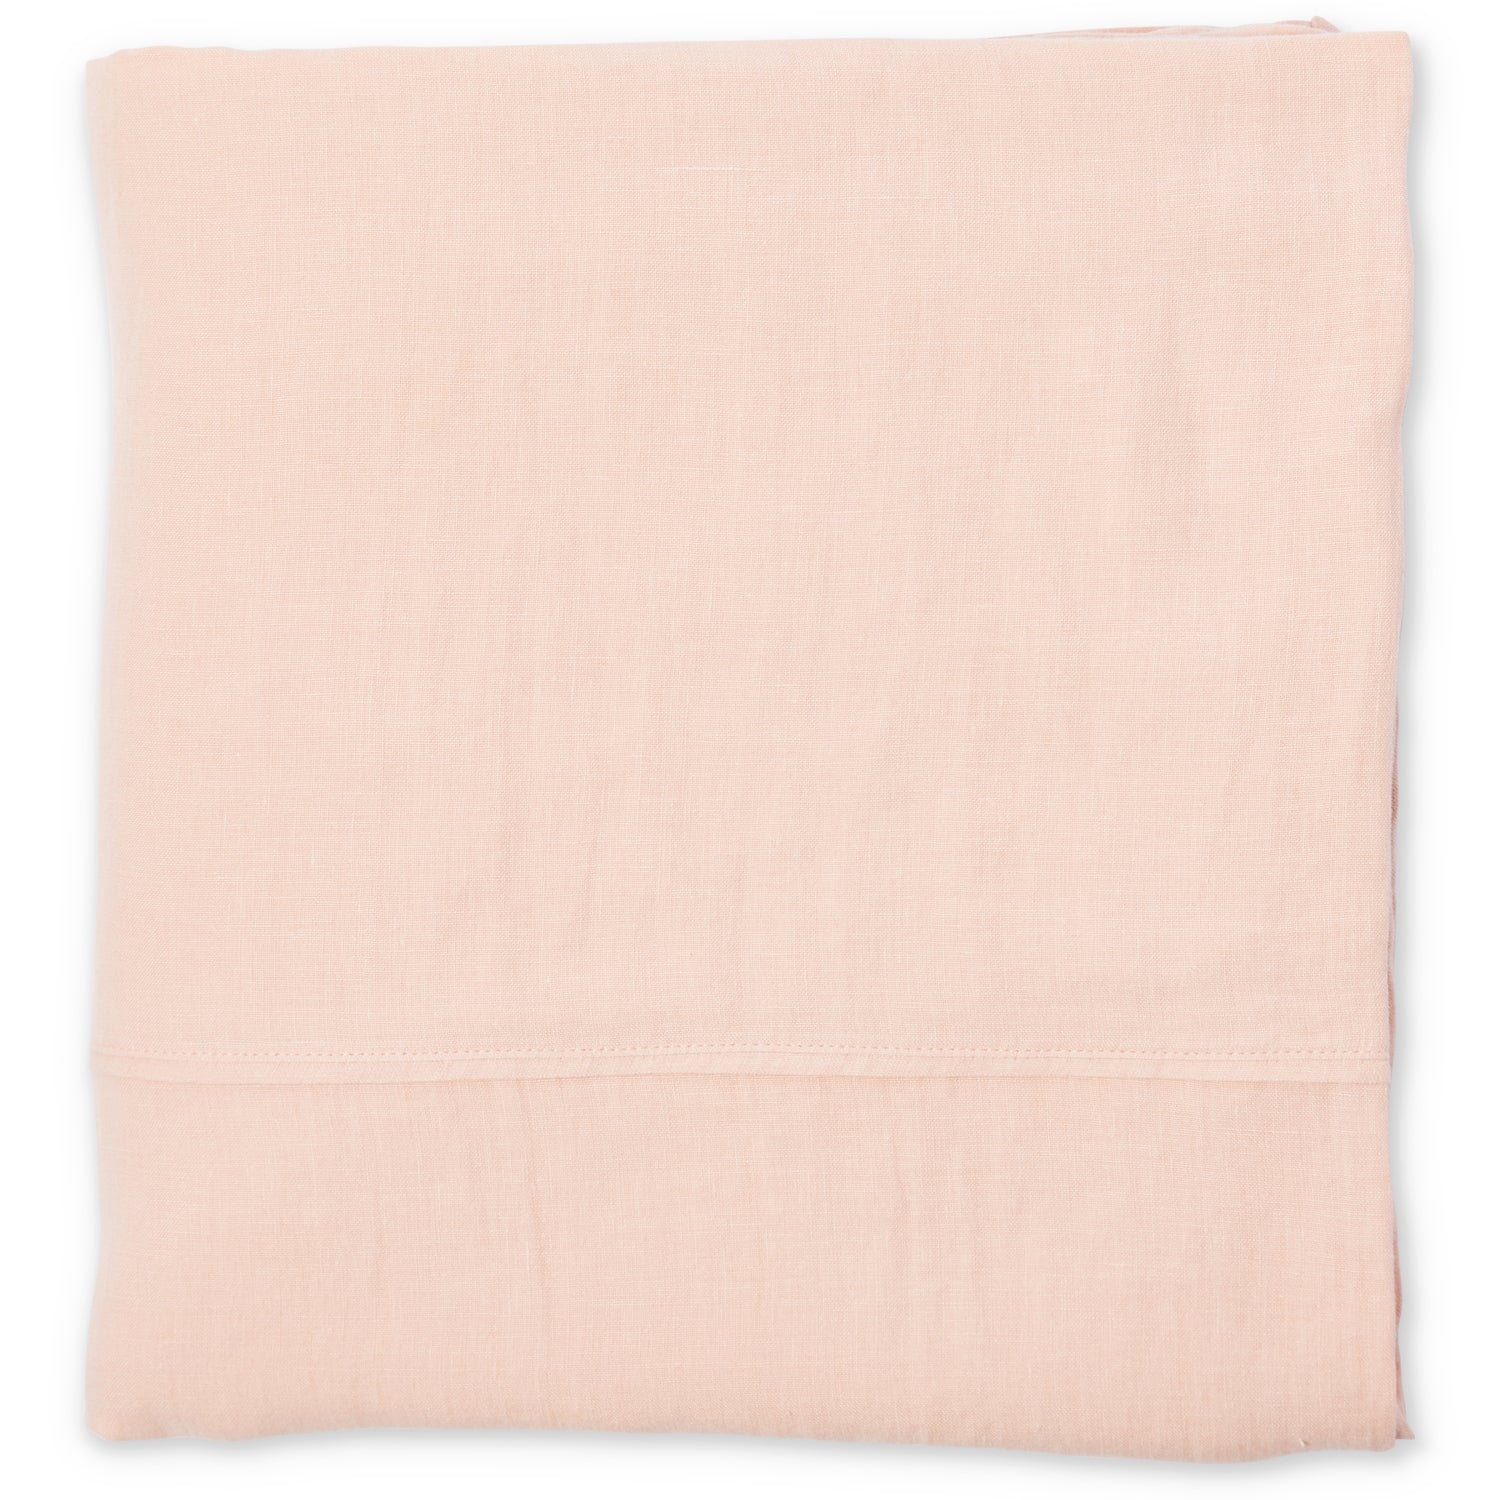 Staples Linen Flat Sheet - Rose